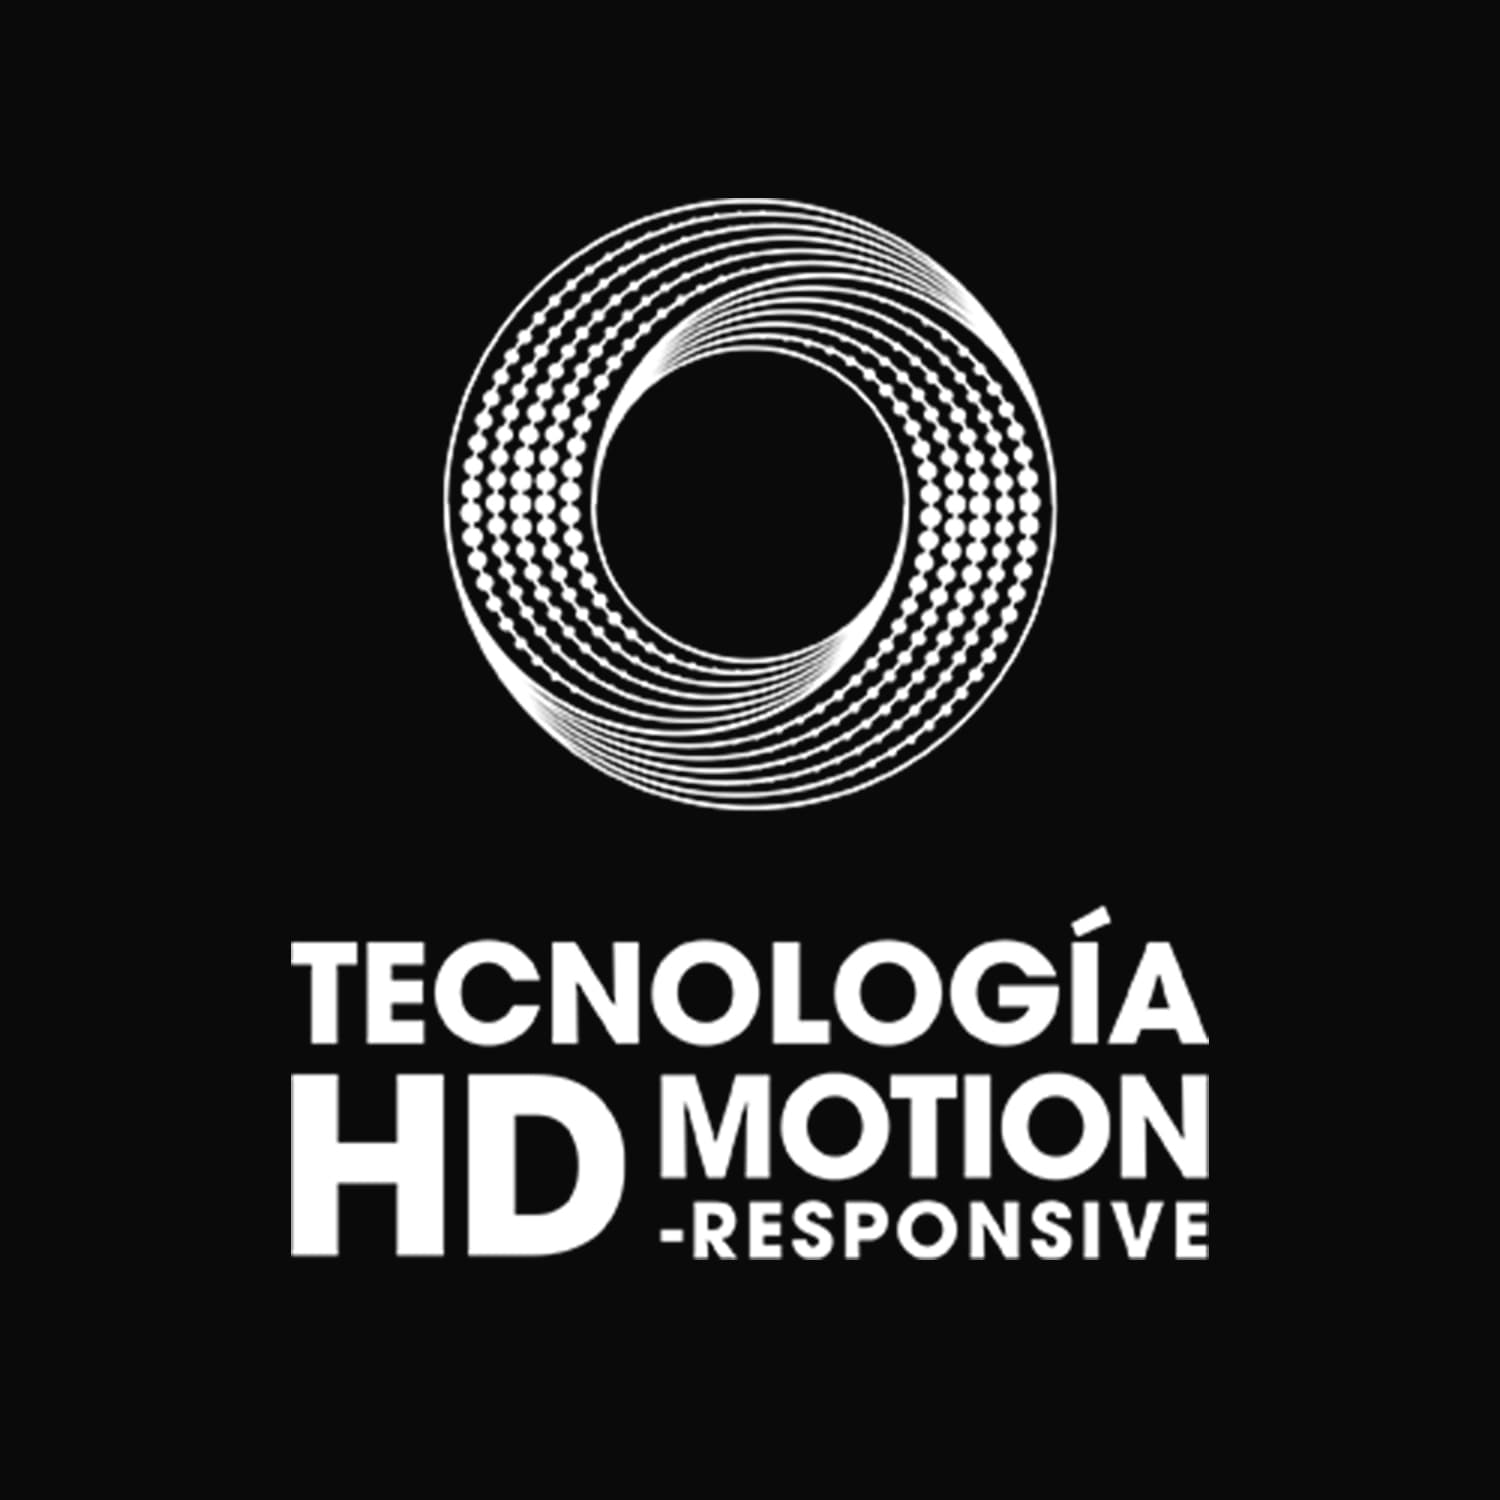 Tecnología HD motion-responsive